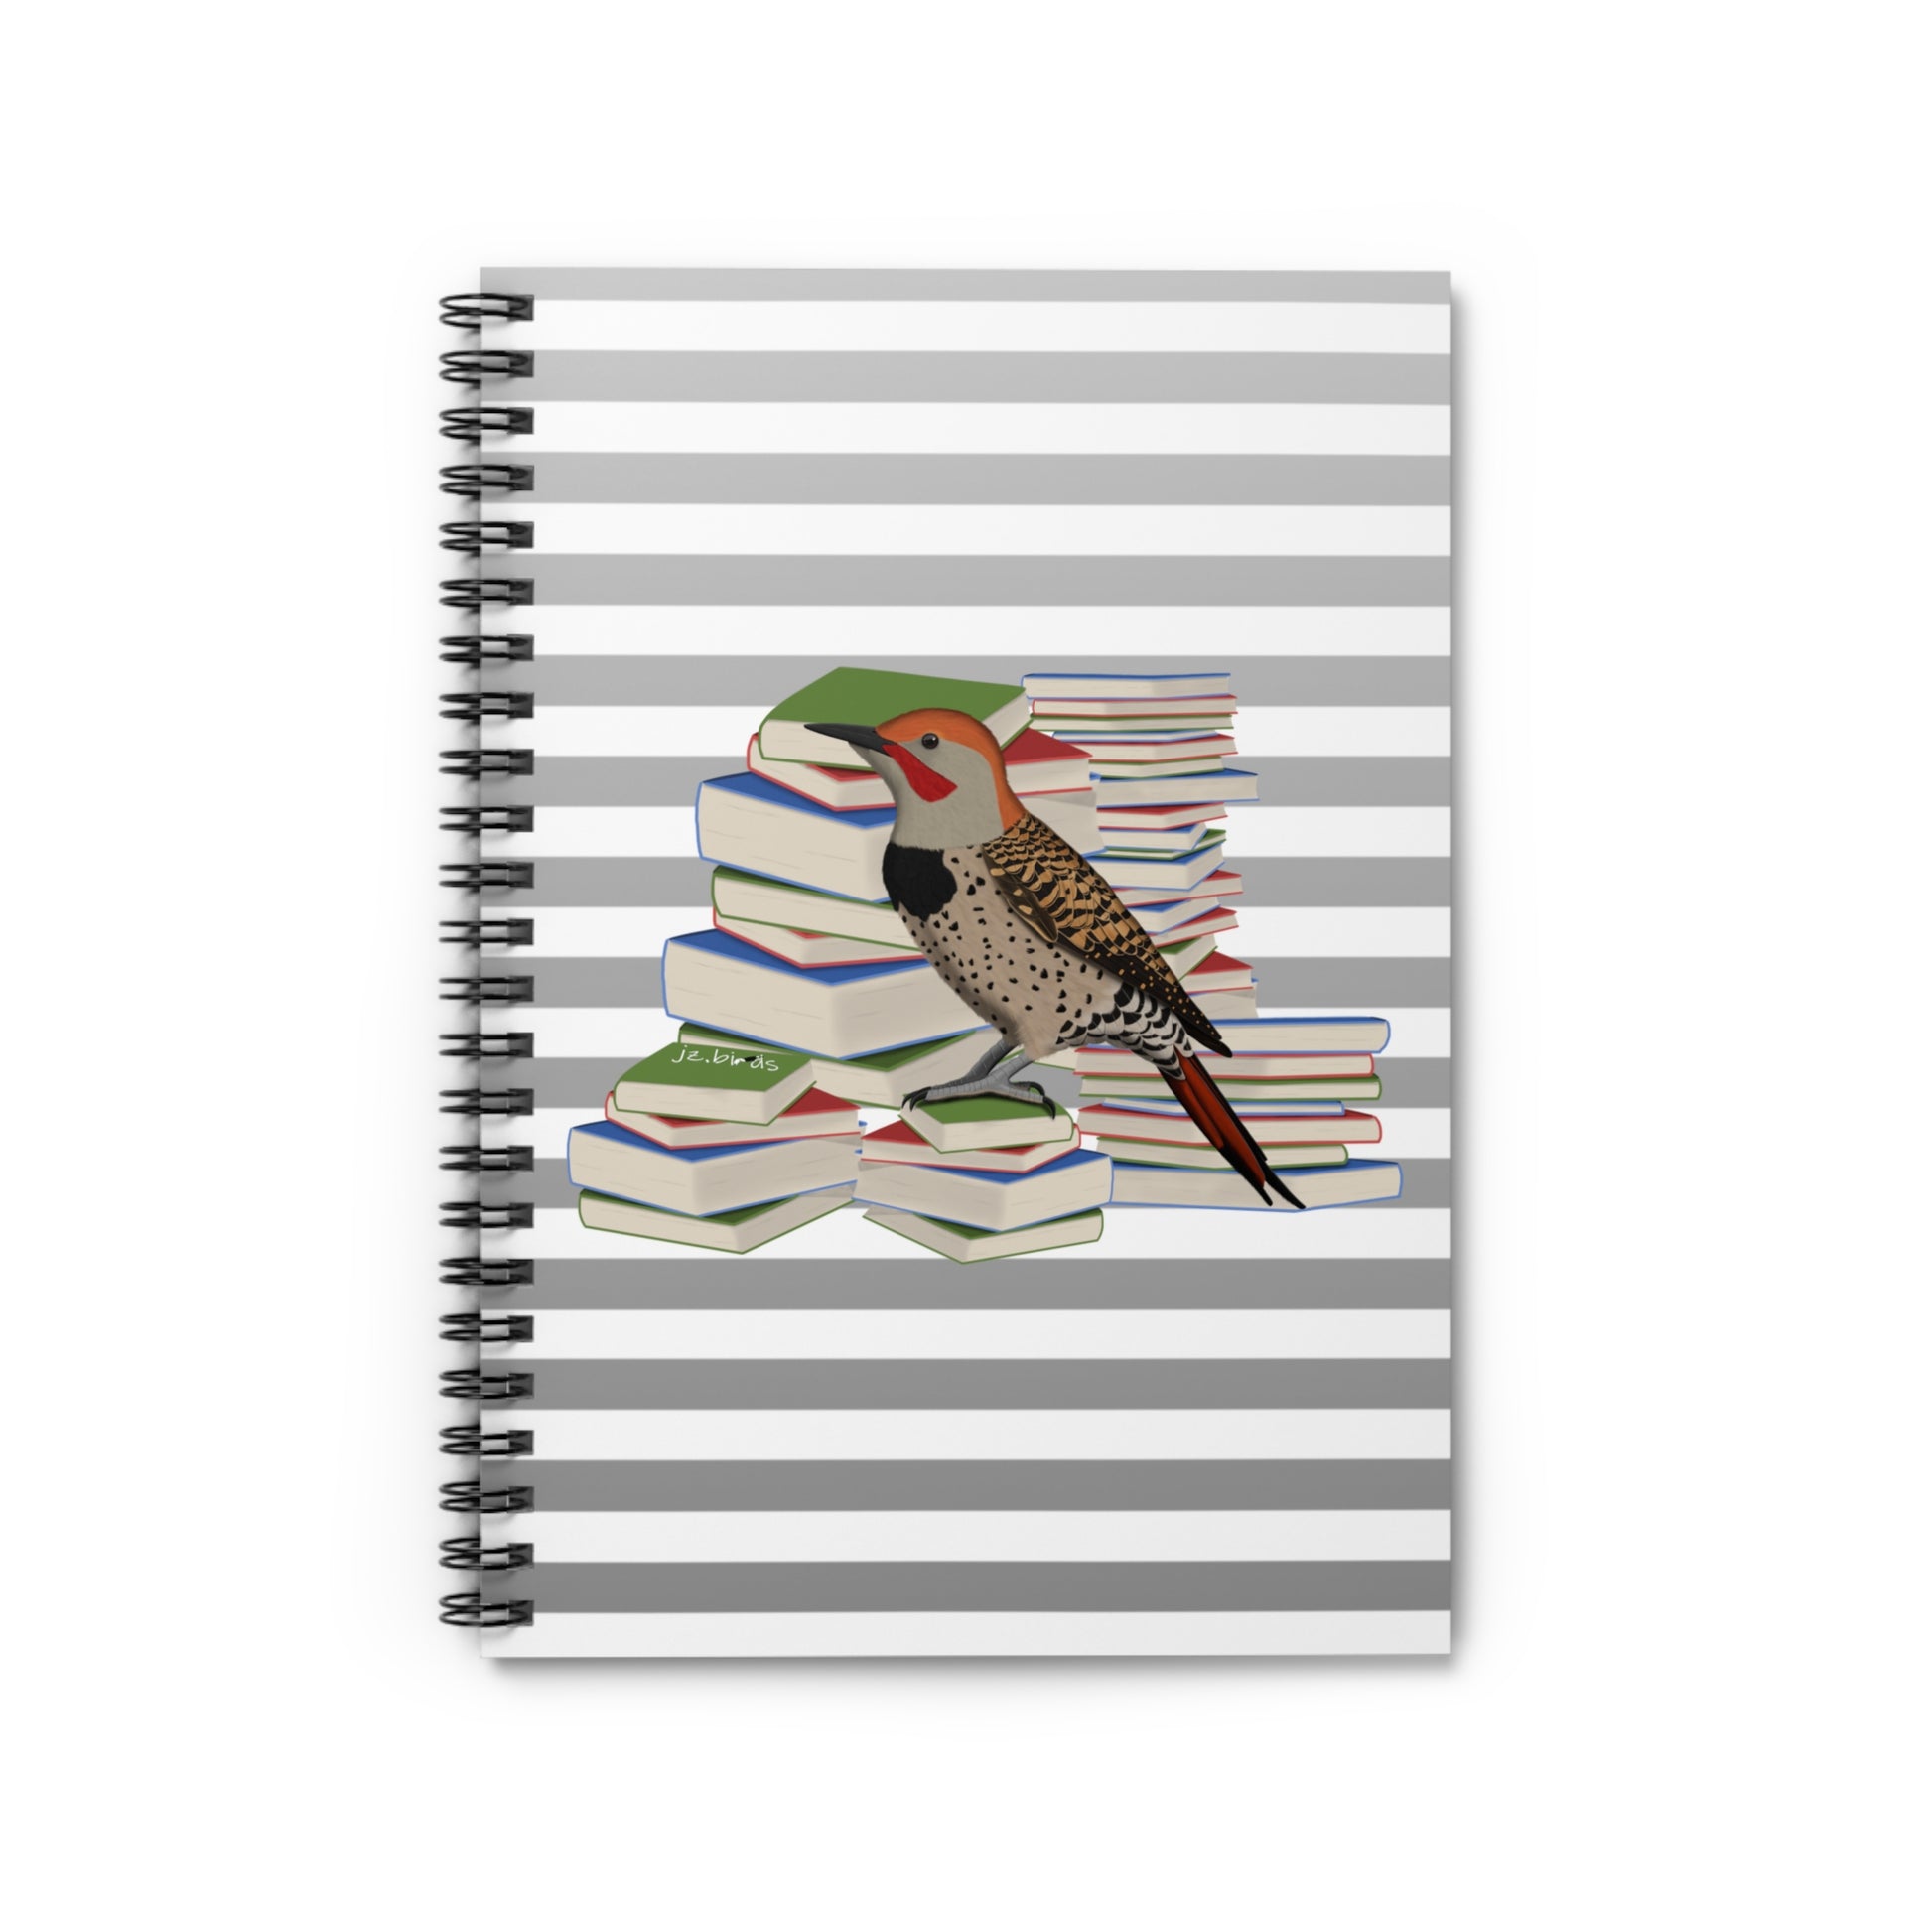 Northern Flicker Bird with Books Birdlover Bookworm Spiral Notebook Ruled Line